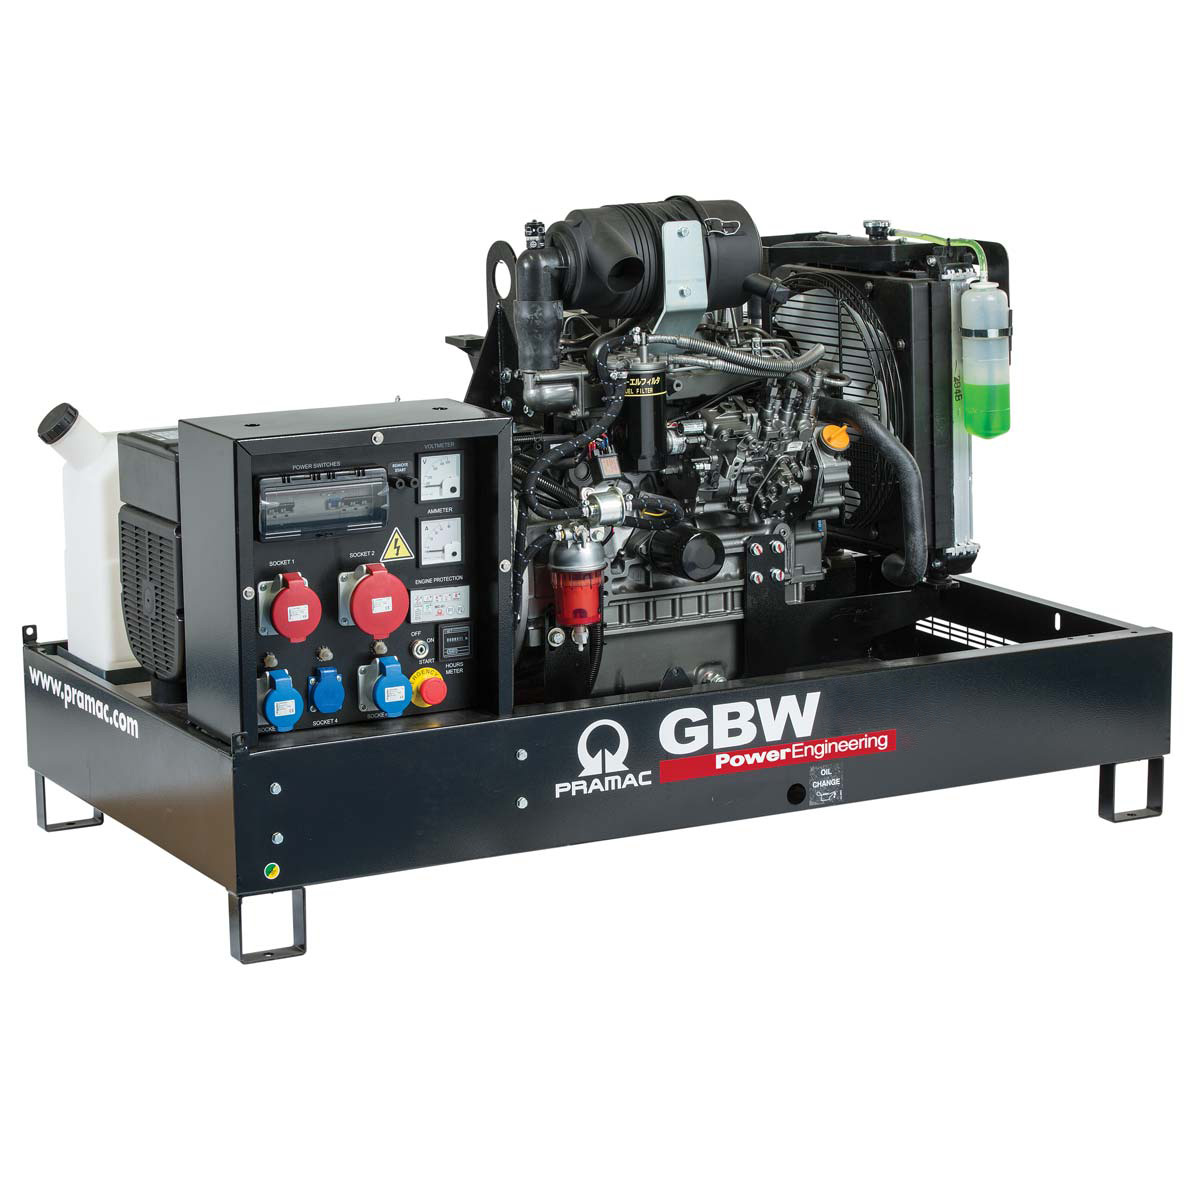 Stromerzeuger GBW 10 Pramac